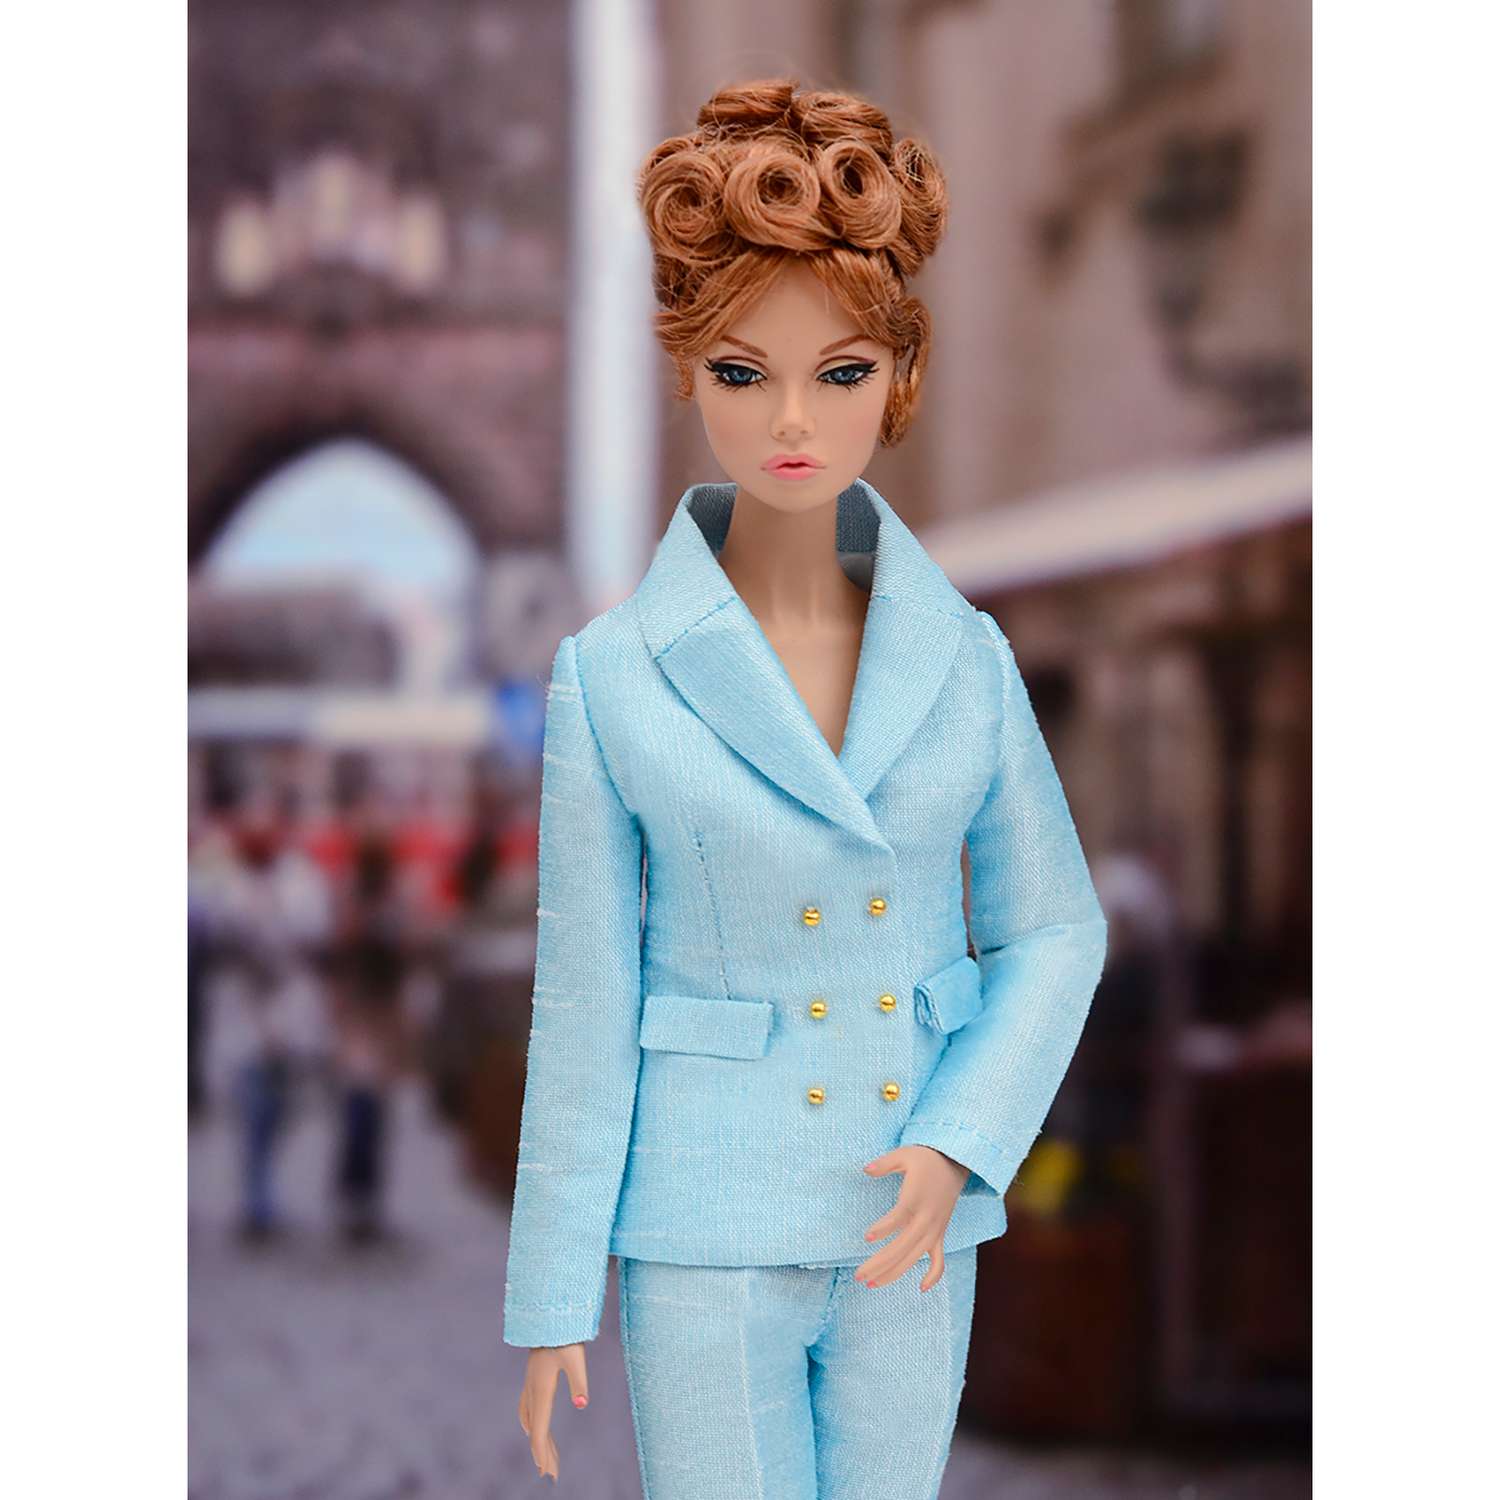 Шелковый брючный костюм Эленприв Небесно-голубой для куклы 29 см типа Барби FA-011-15 - фото 9